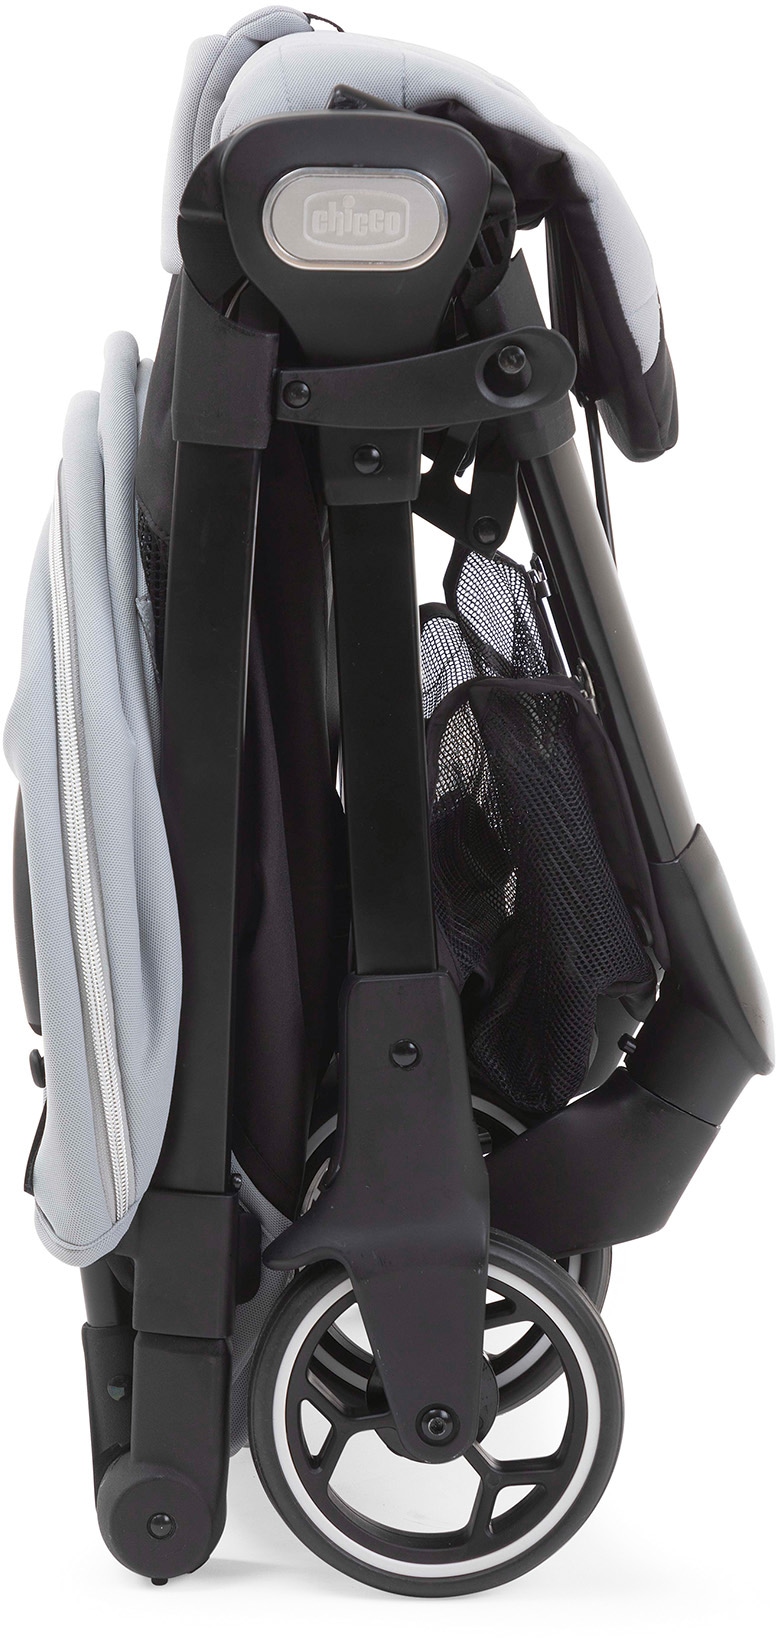 Chicco Sportbuggy »We, Cool Grey«, 22 kg, mit Regenschutz und Transporttasche